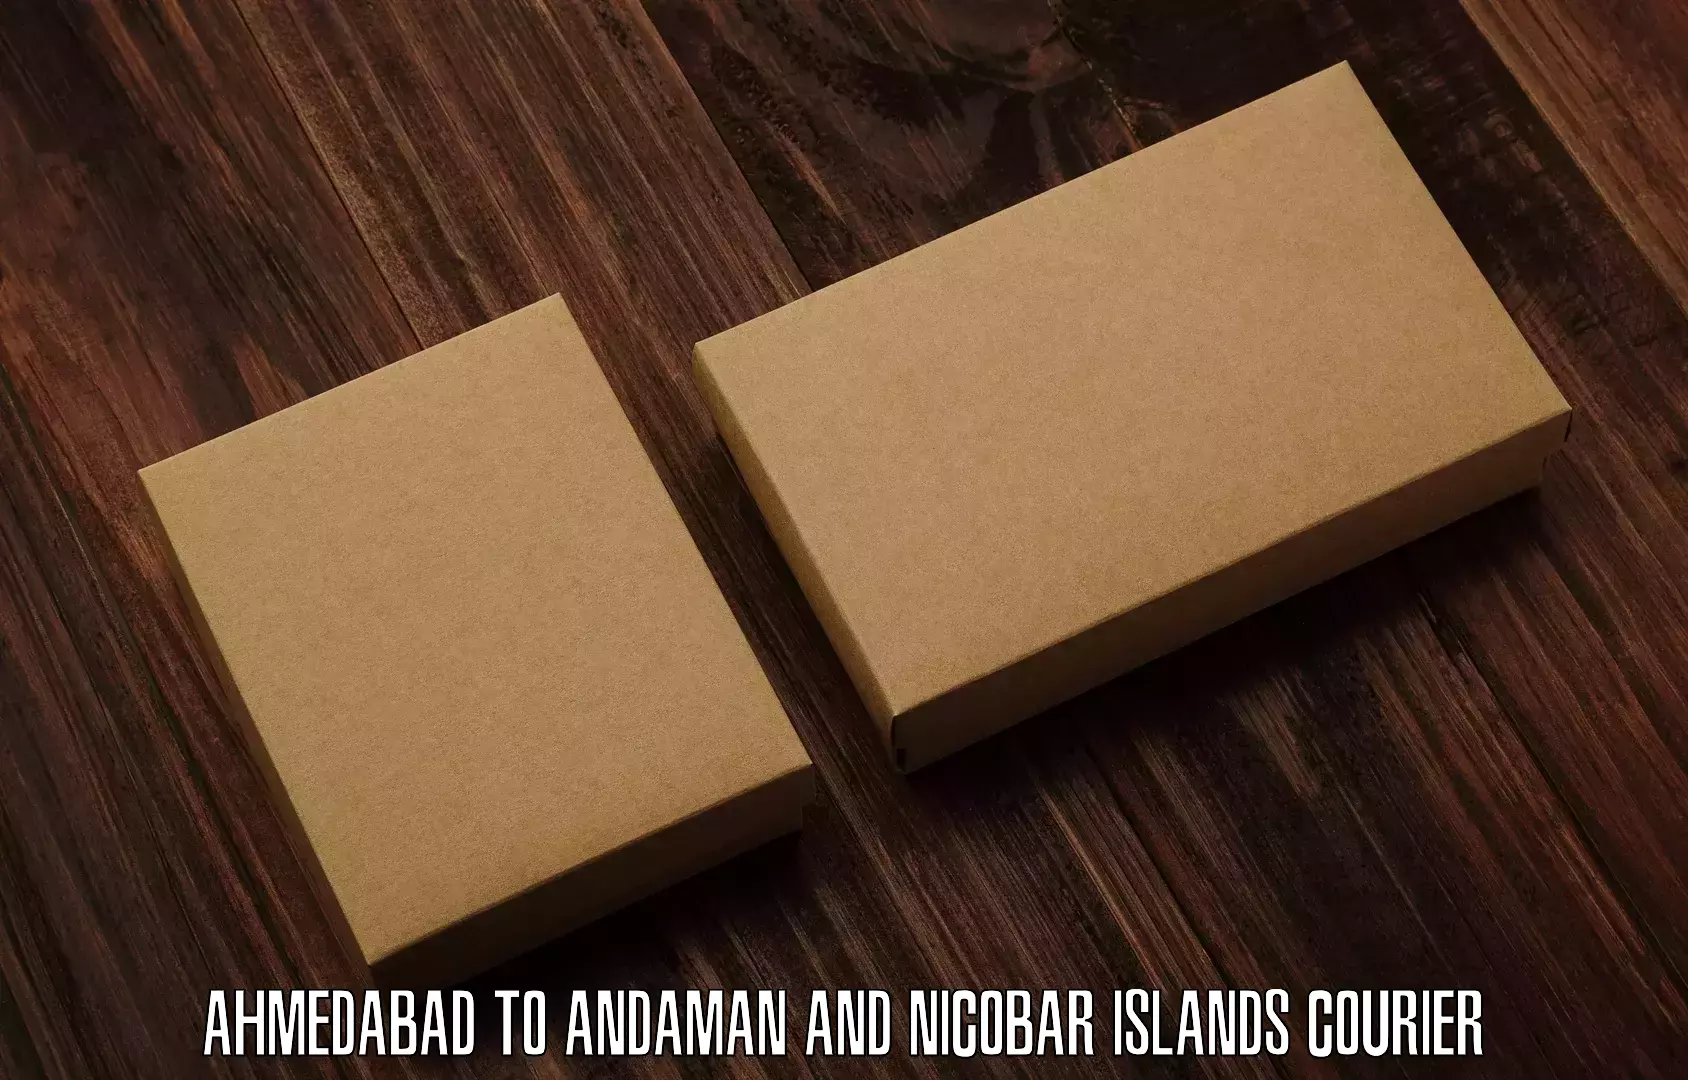 Shipping and handling Ahmedabad to Andaman and Nicobar Islands